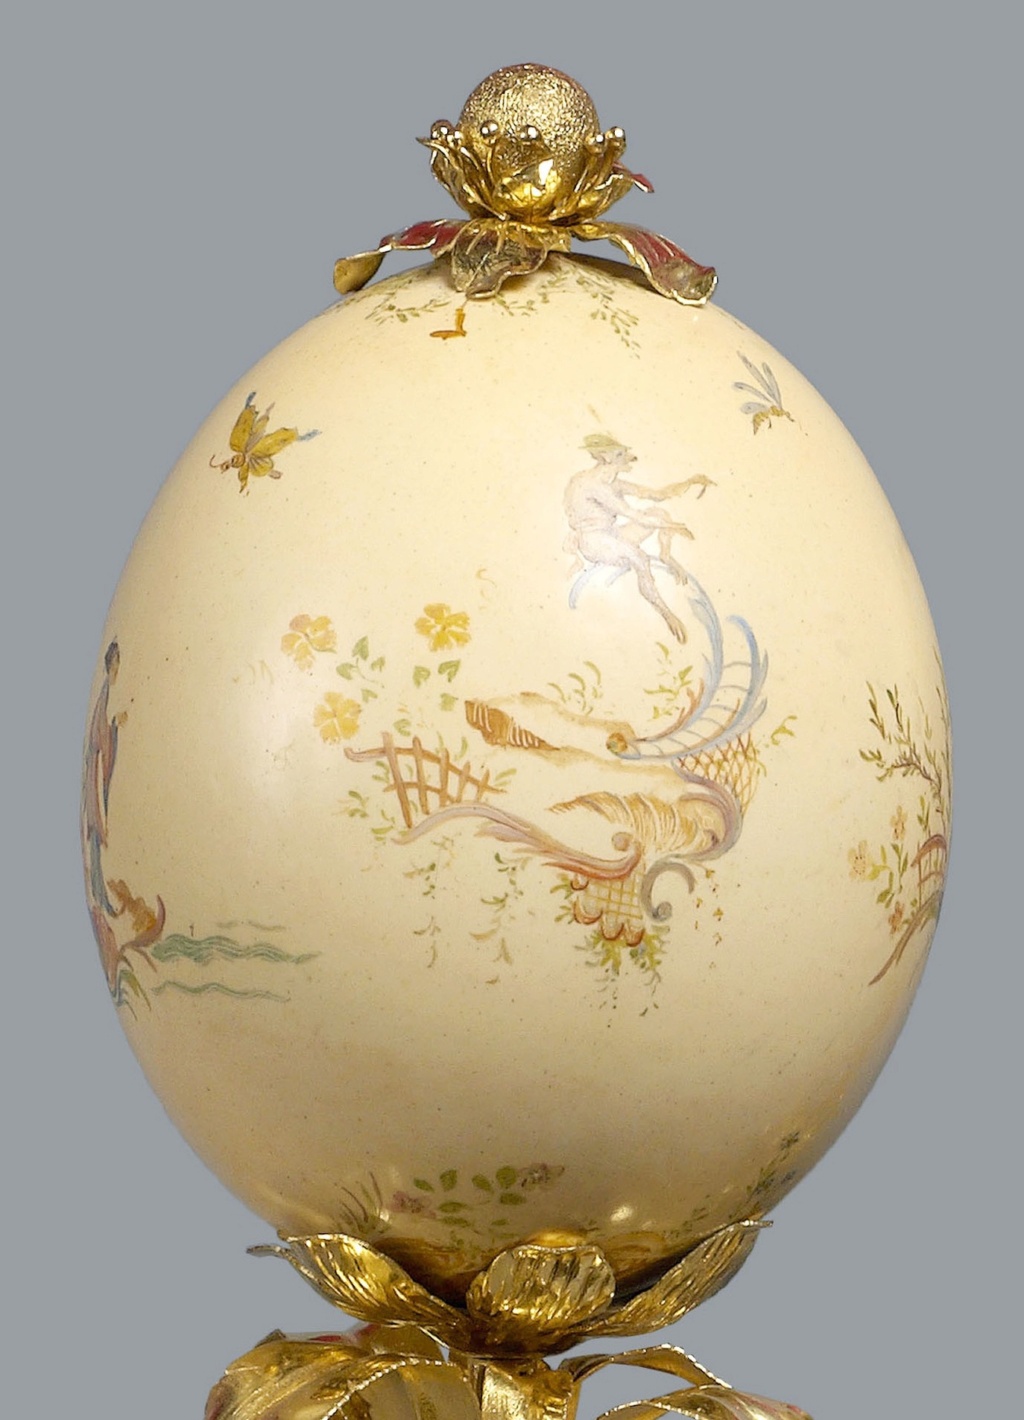 Les oeufs de Pâques et les oeufs d'Autruche peints au XVIIIe siècle 3588-210